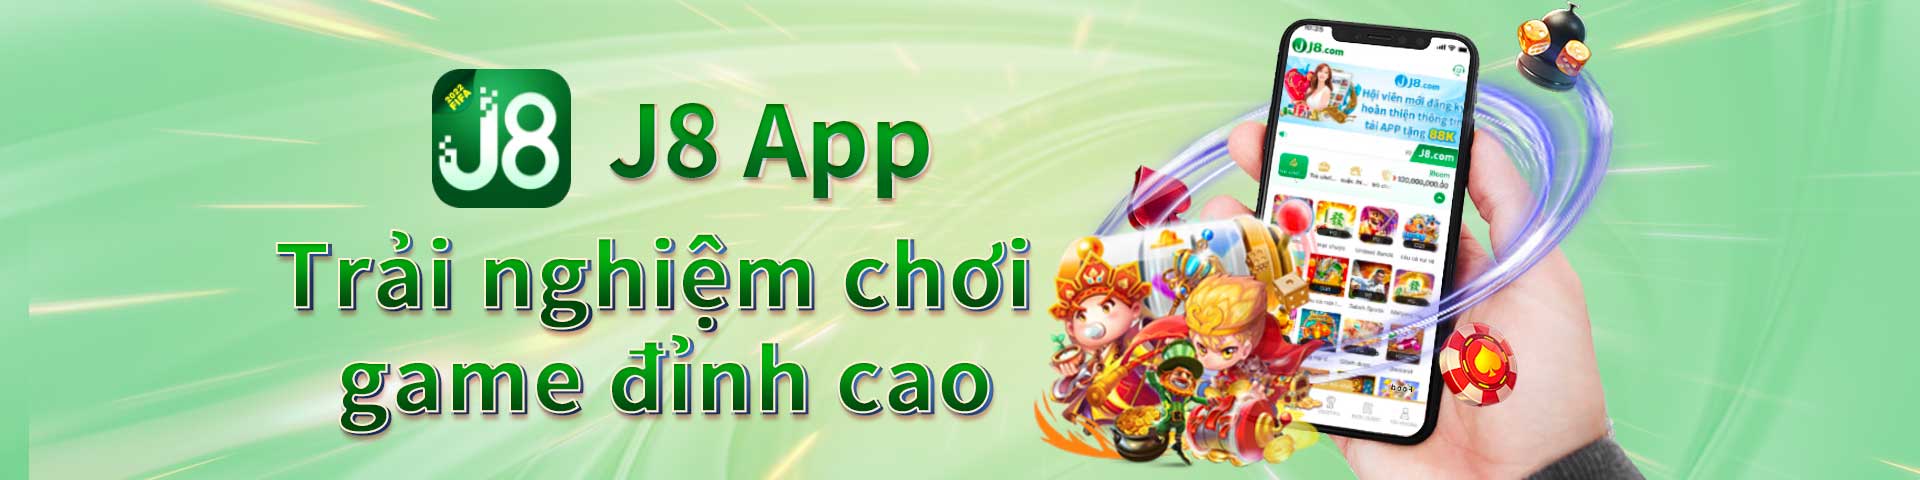 J8-App-trai-nghiem-choi-game-dinh-cao